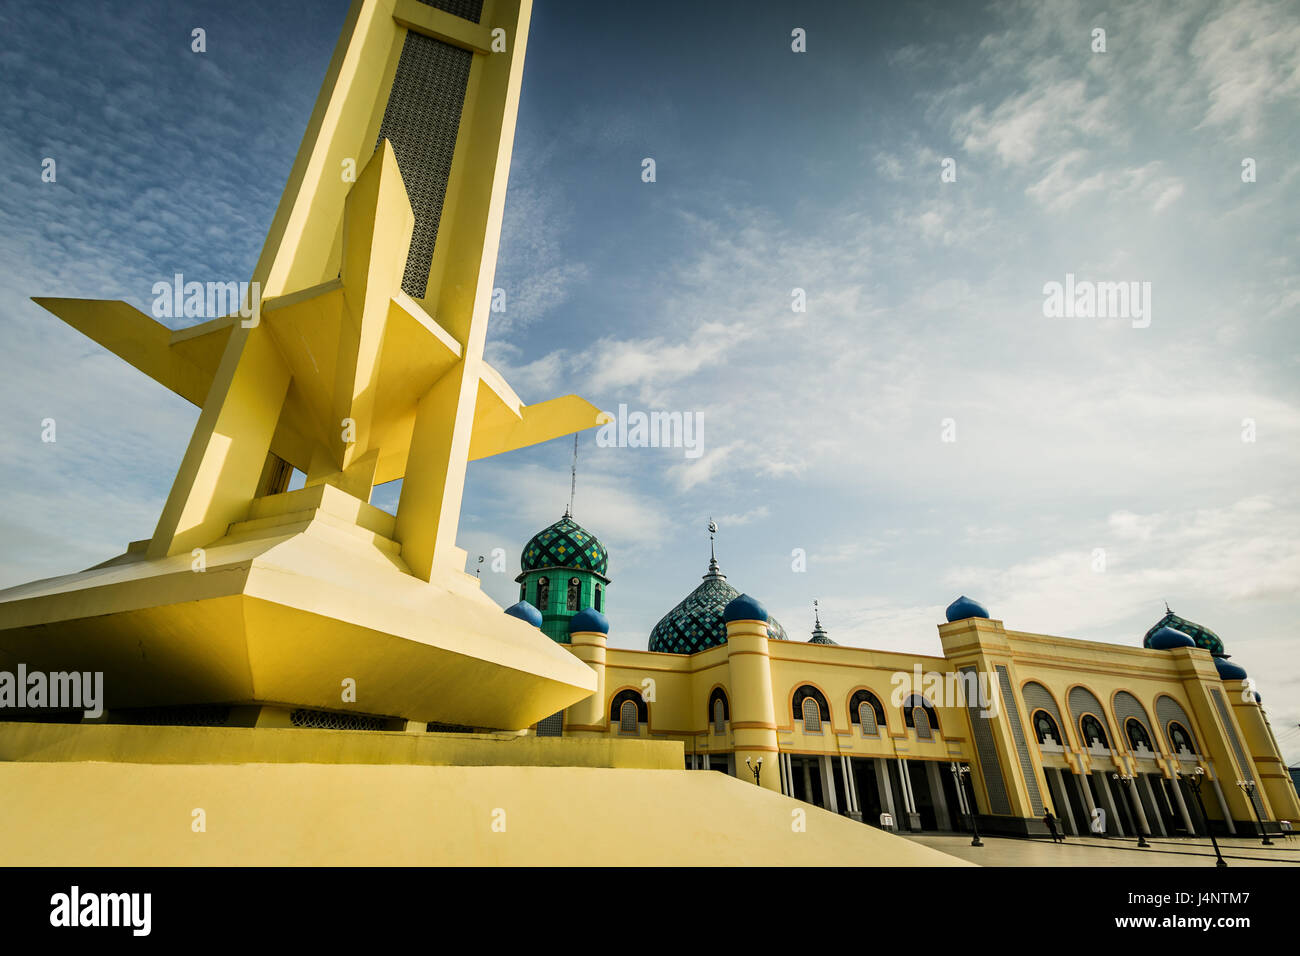 Große Moschee von Martapura, Masjid Al-Karomah beeindruckende religiöse Stätte des islamischen Glaubens gewidmet. Schöne Weitwinkel niedrig Blick auf riesige Moschee Stockfoto